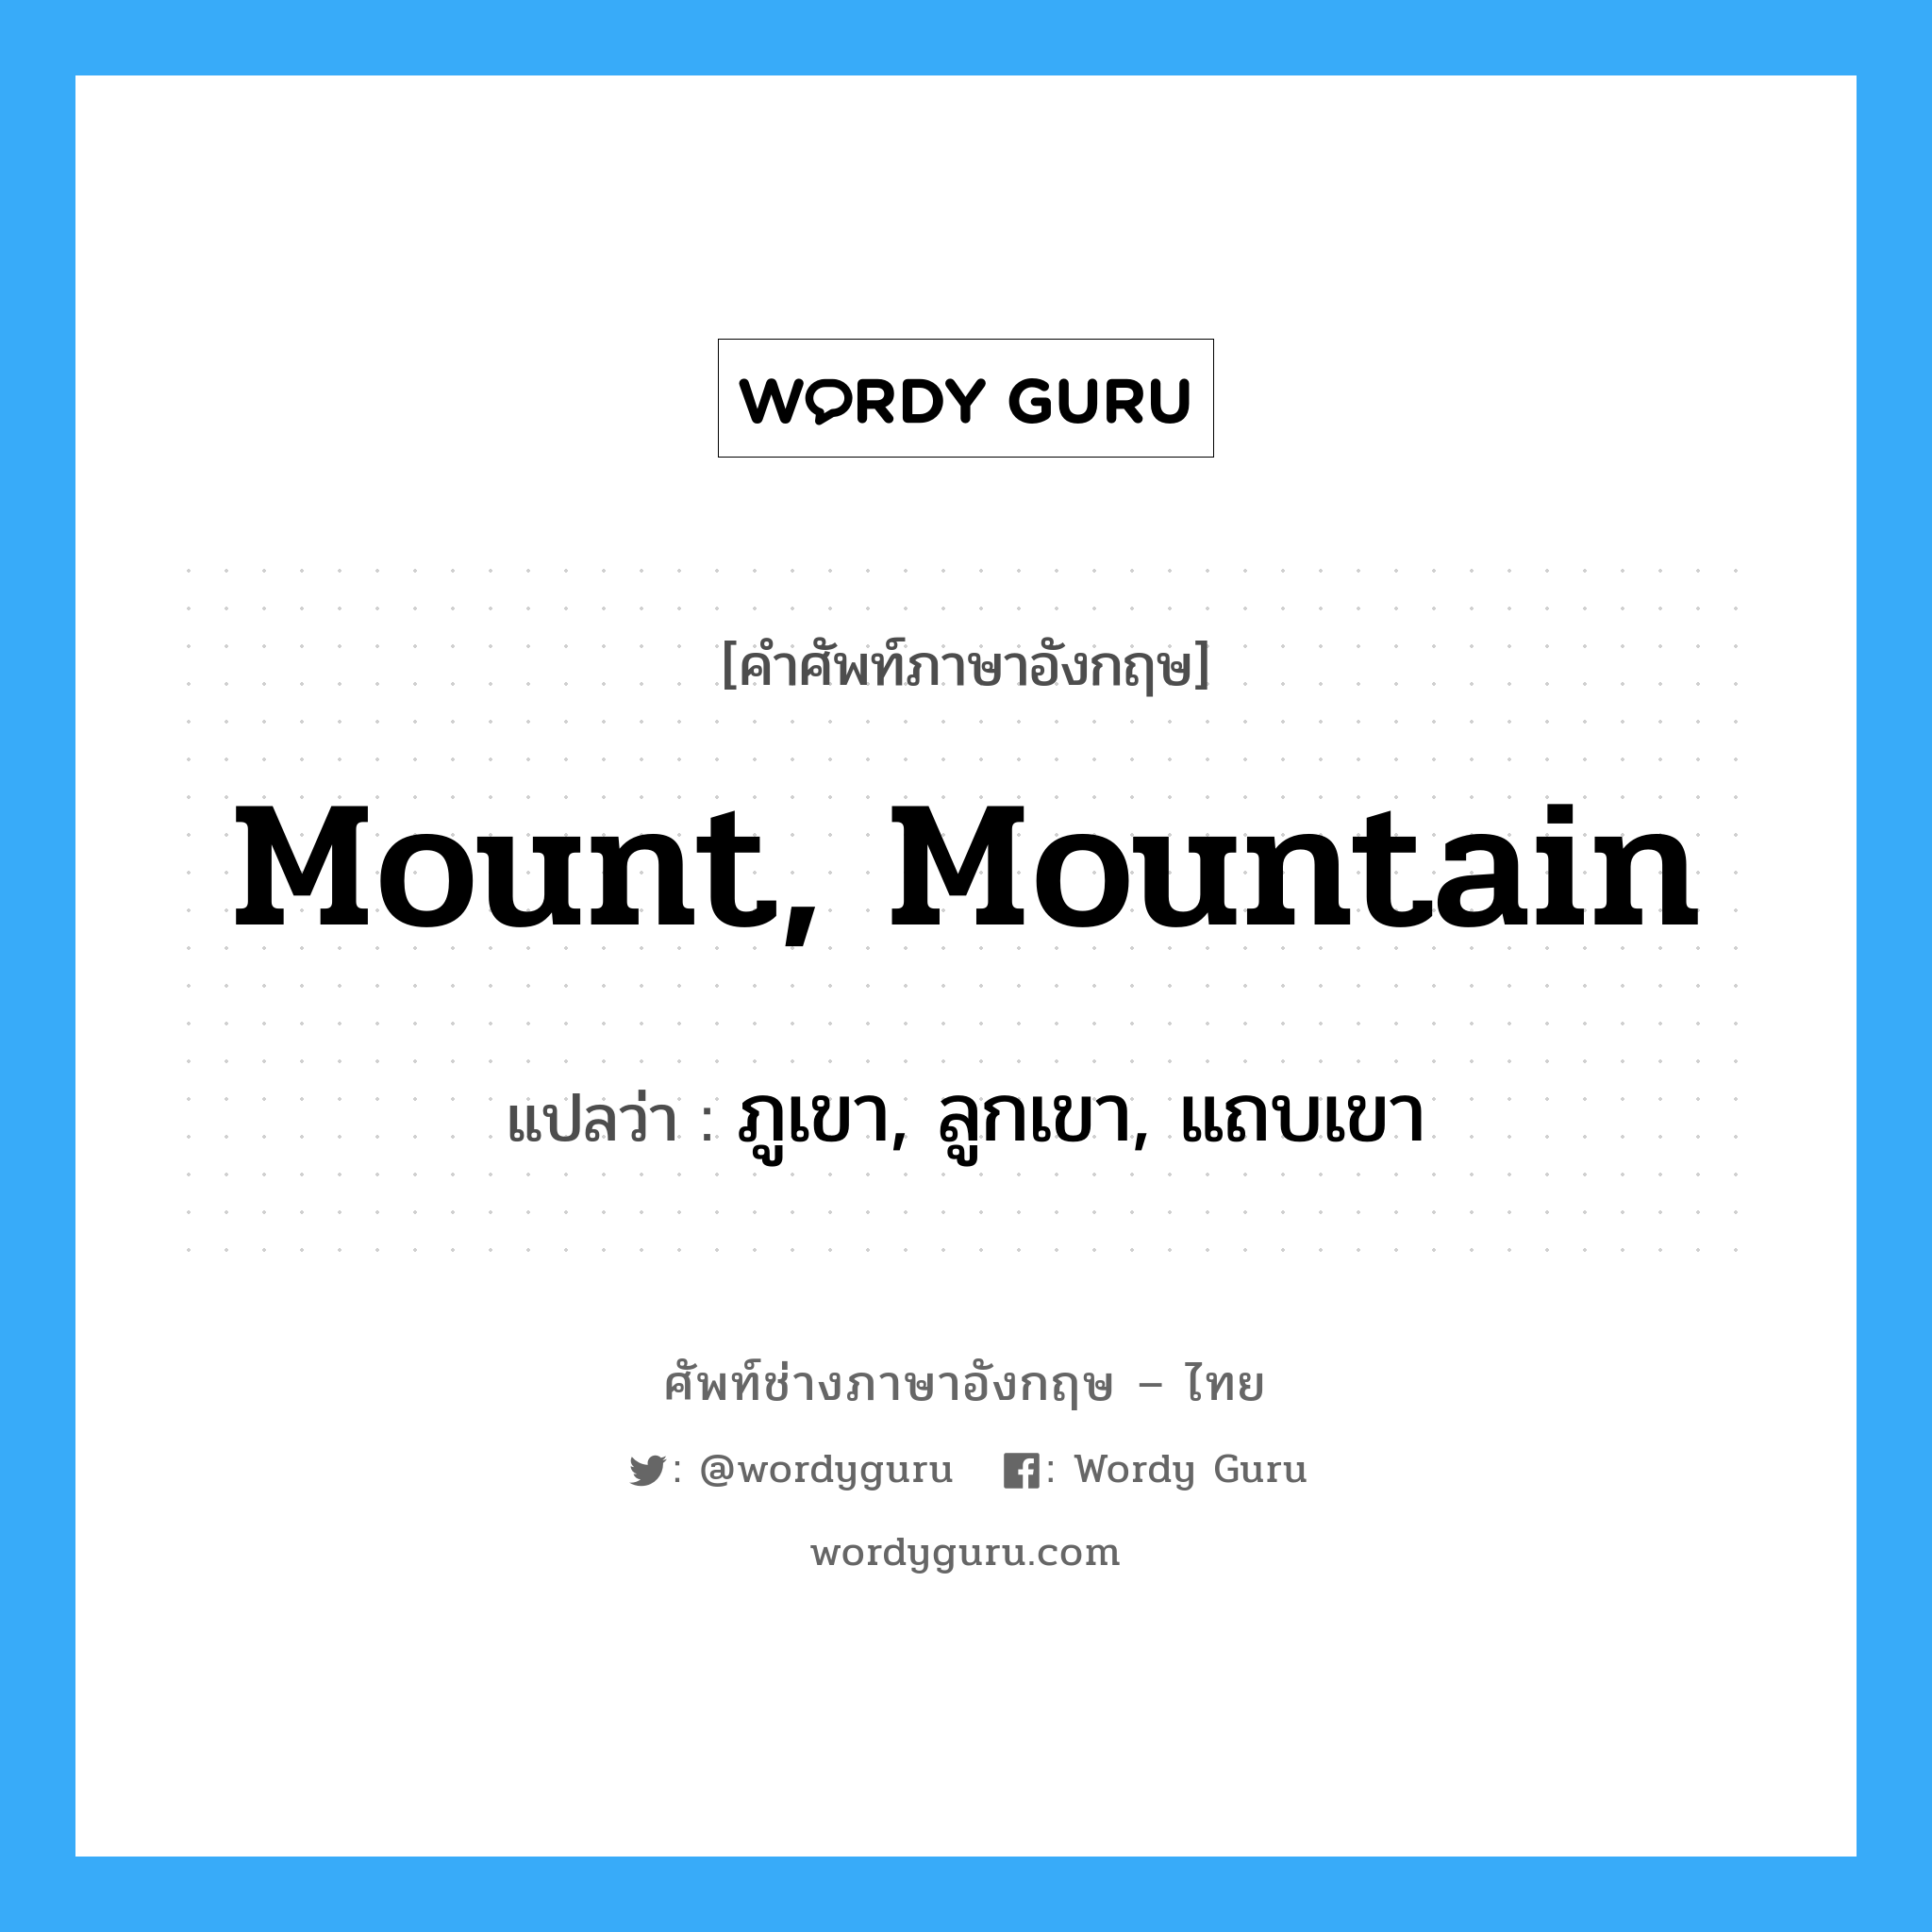 ภูเขา, ลูกเขา, แถบเขา ภาษาอังกฤษ?, คำศัพท์ช่างภาษาอังกฤษ - ไทย ภูเขา, ลูกเขา, แถบเขา คำศัพท์ภาษาอังกฤษ ภูเขา, ลูกเขา, แถบเขา แปลว่า mount, mountain